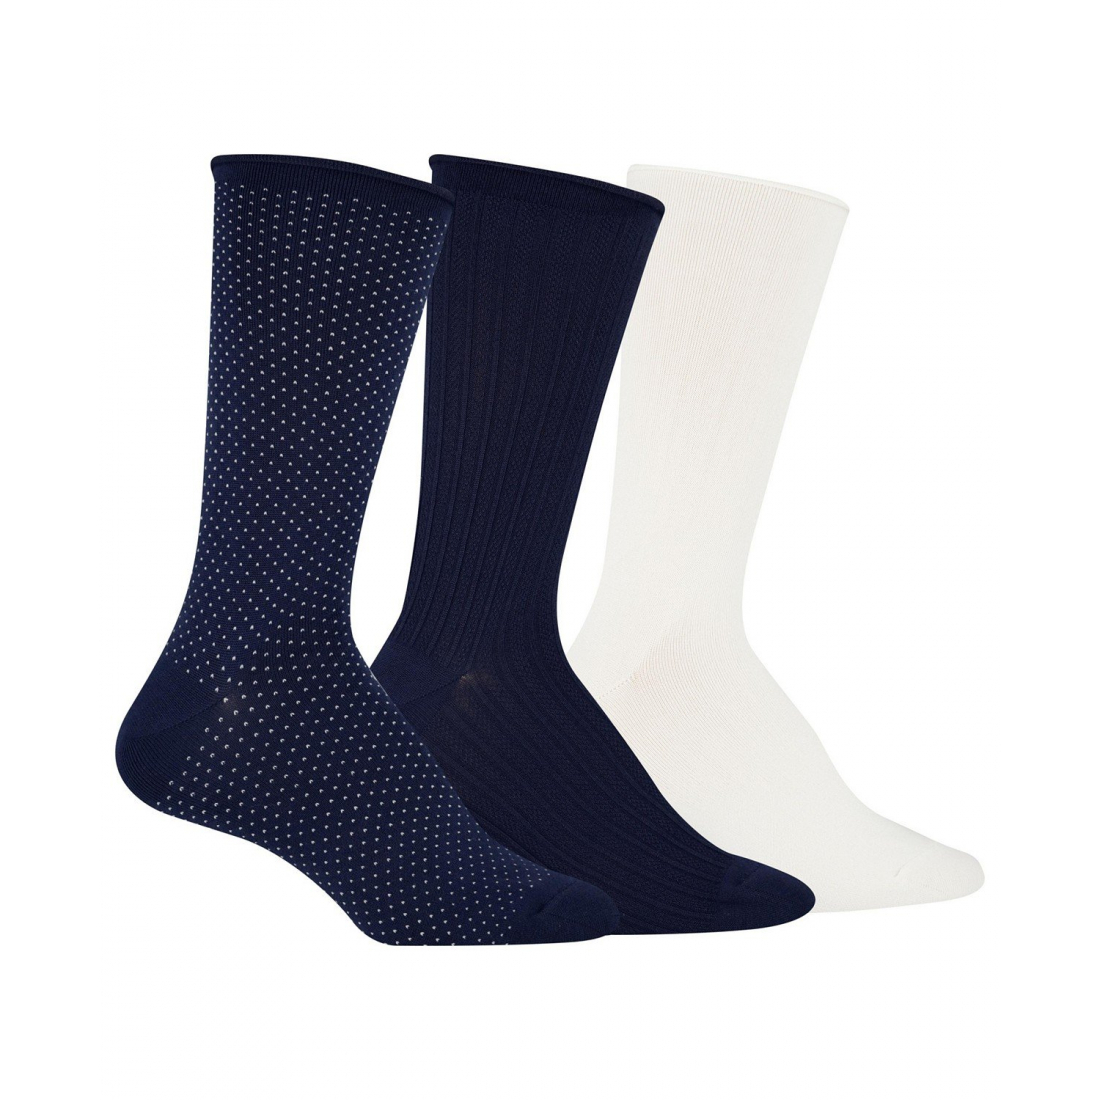 'Super Soft Pindot Roll Top' Socken für Damen - 3 Paare